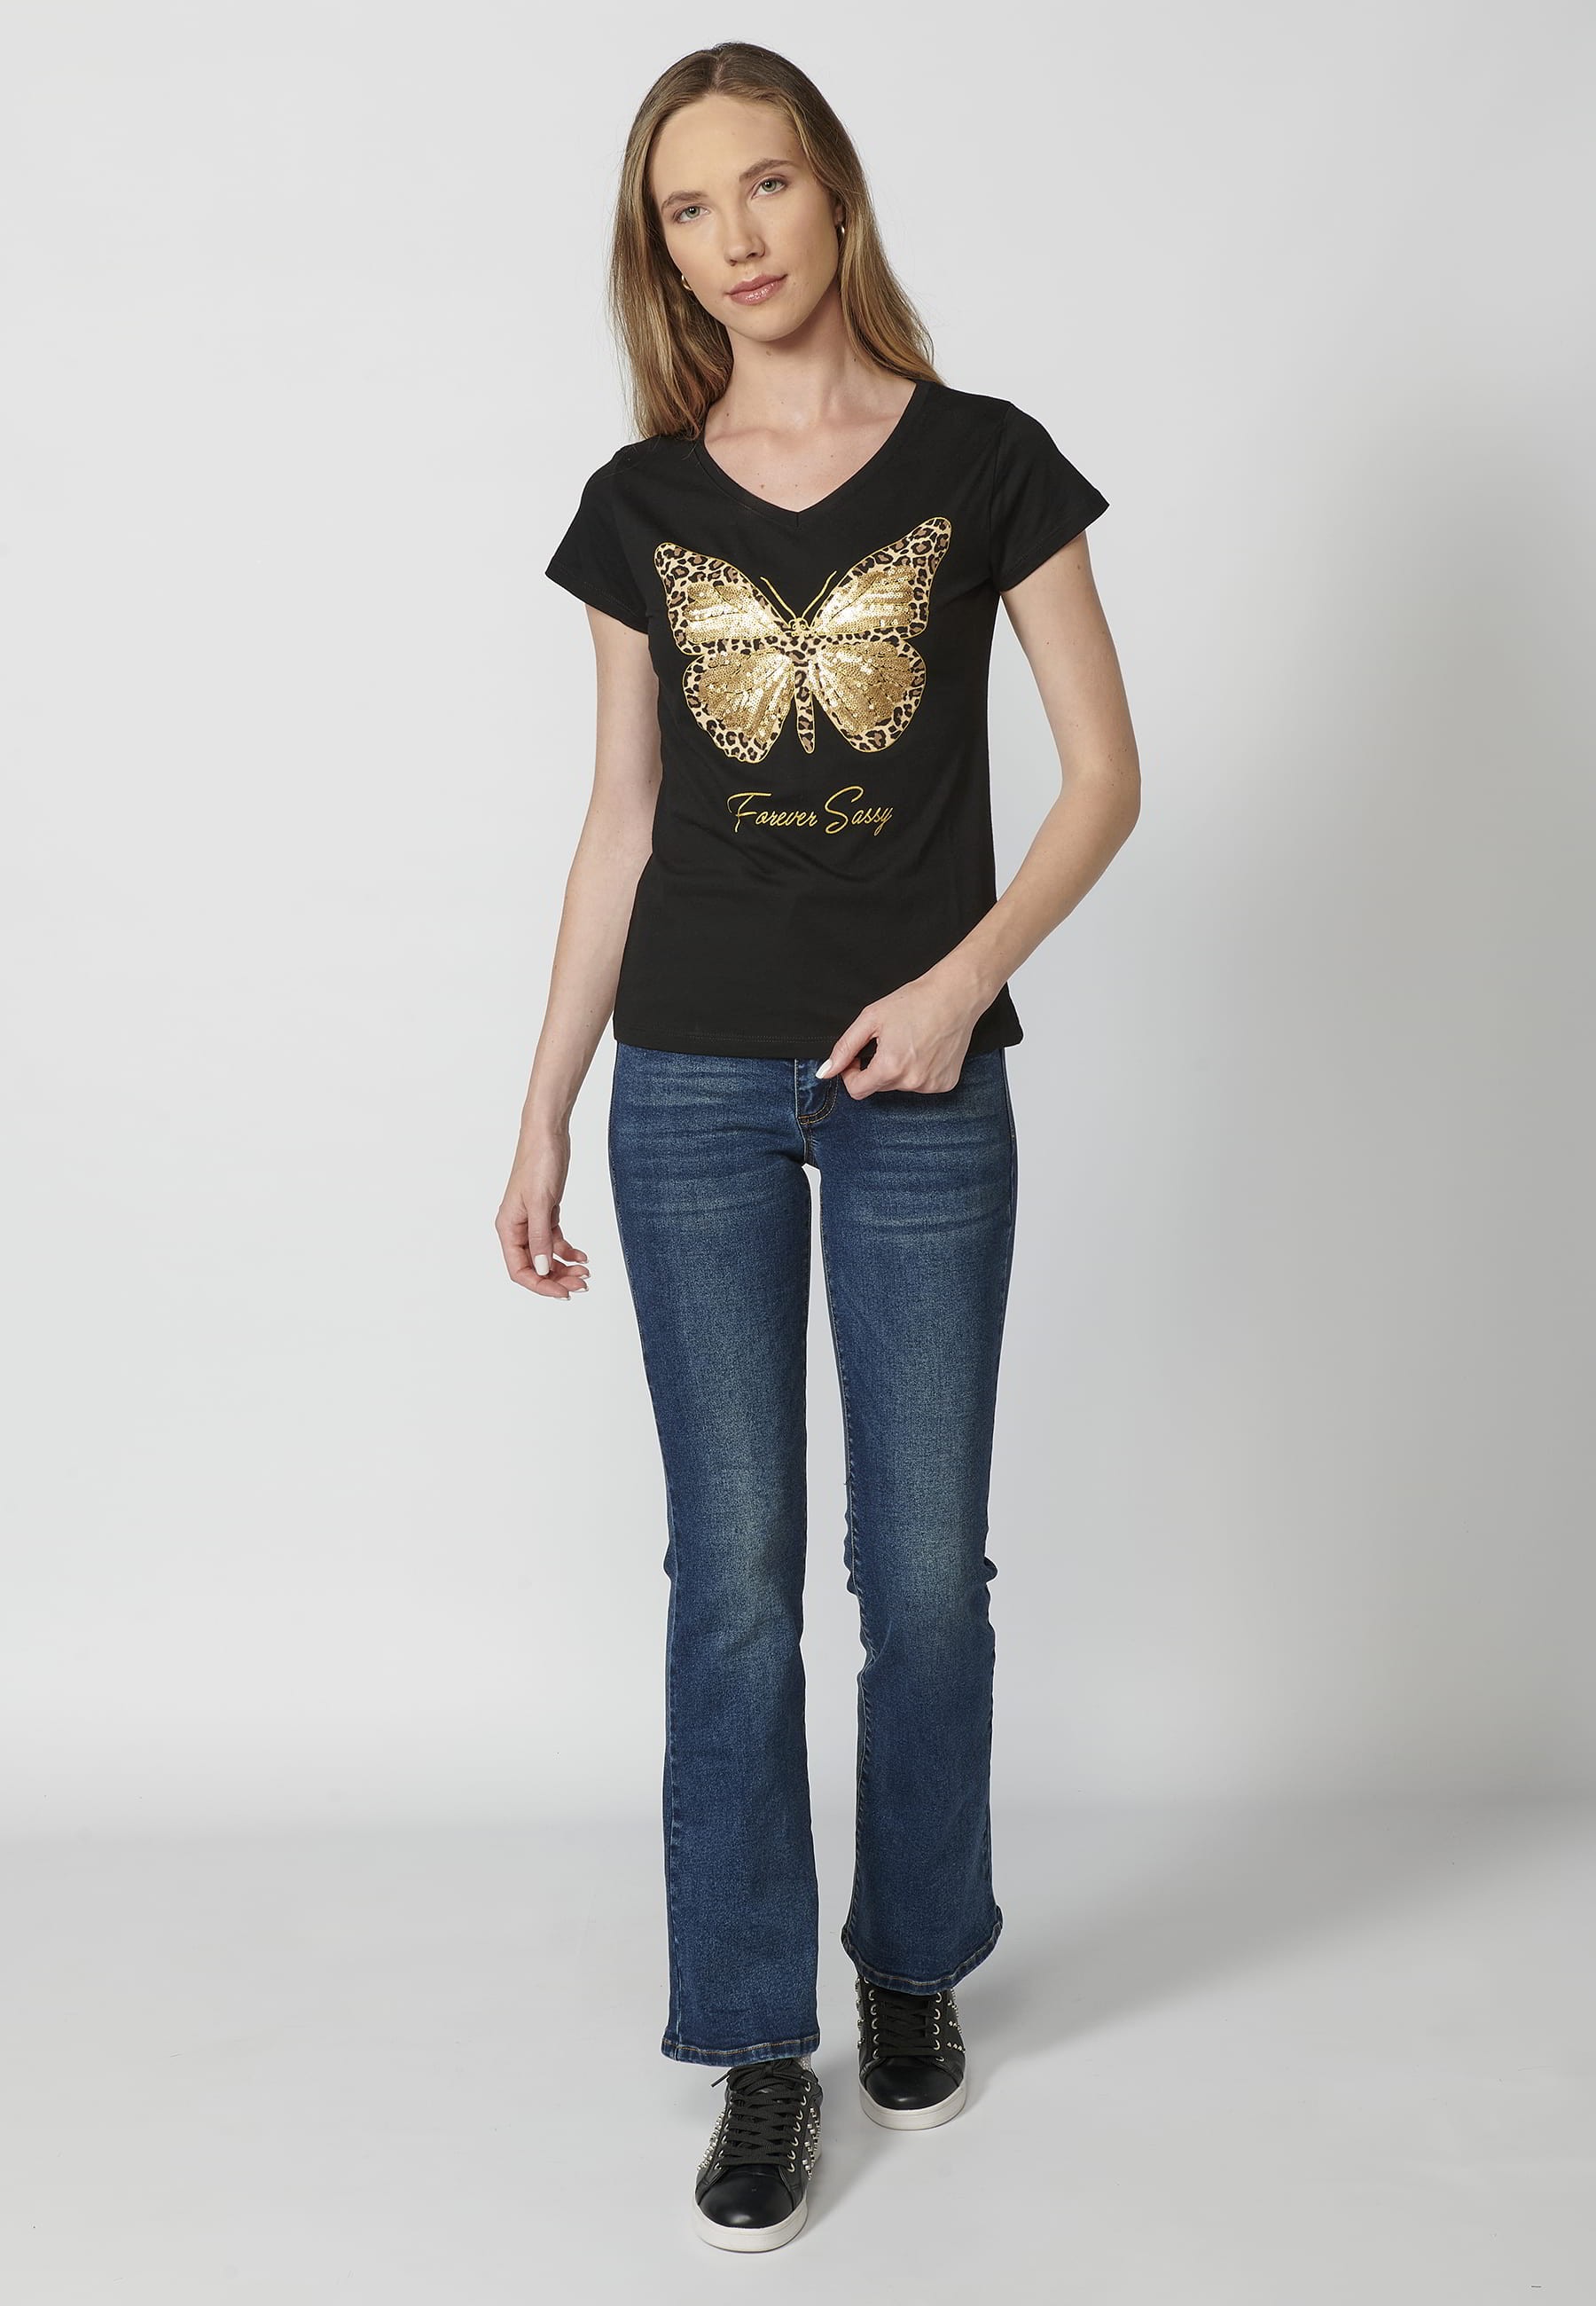 Camiseta de manga corta de algodón cuello redondo estampado frontal mariposa color negro para mujer 4